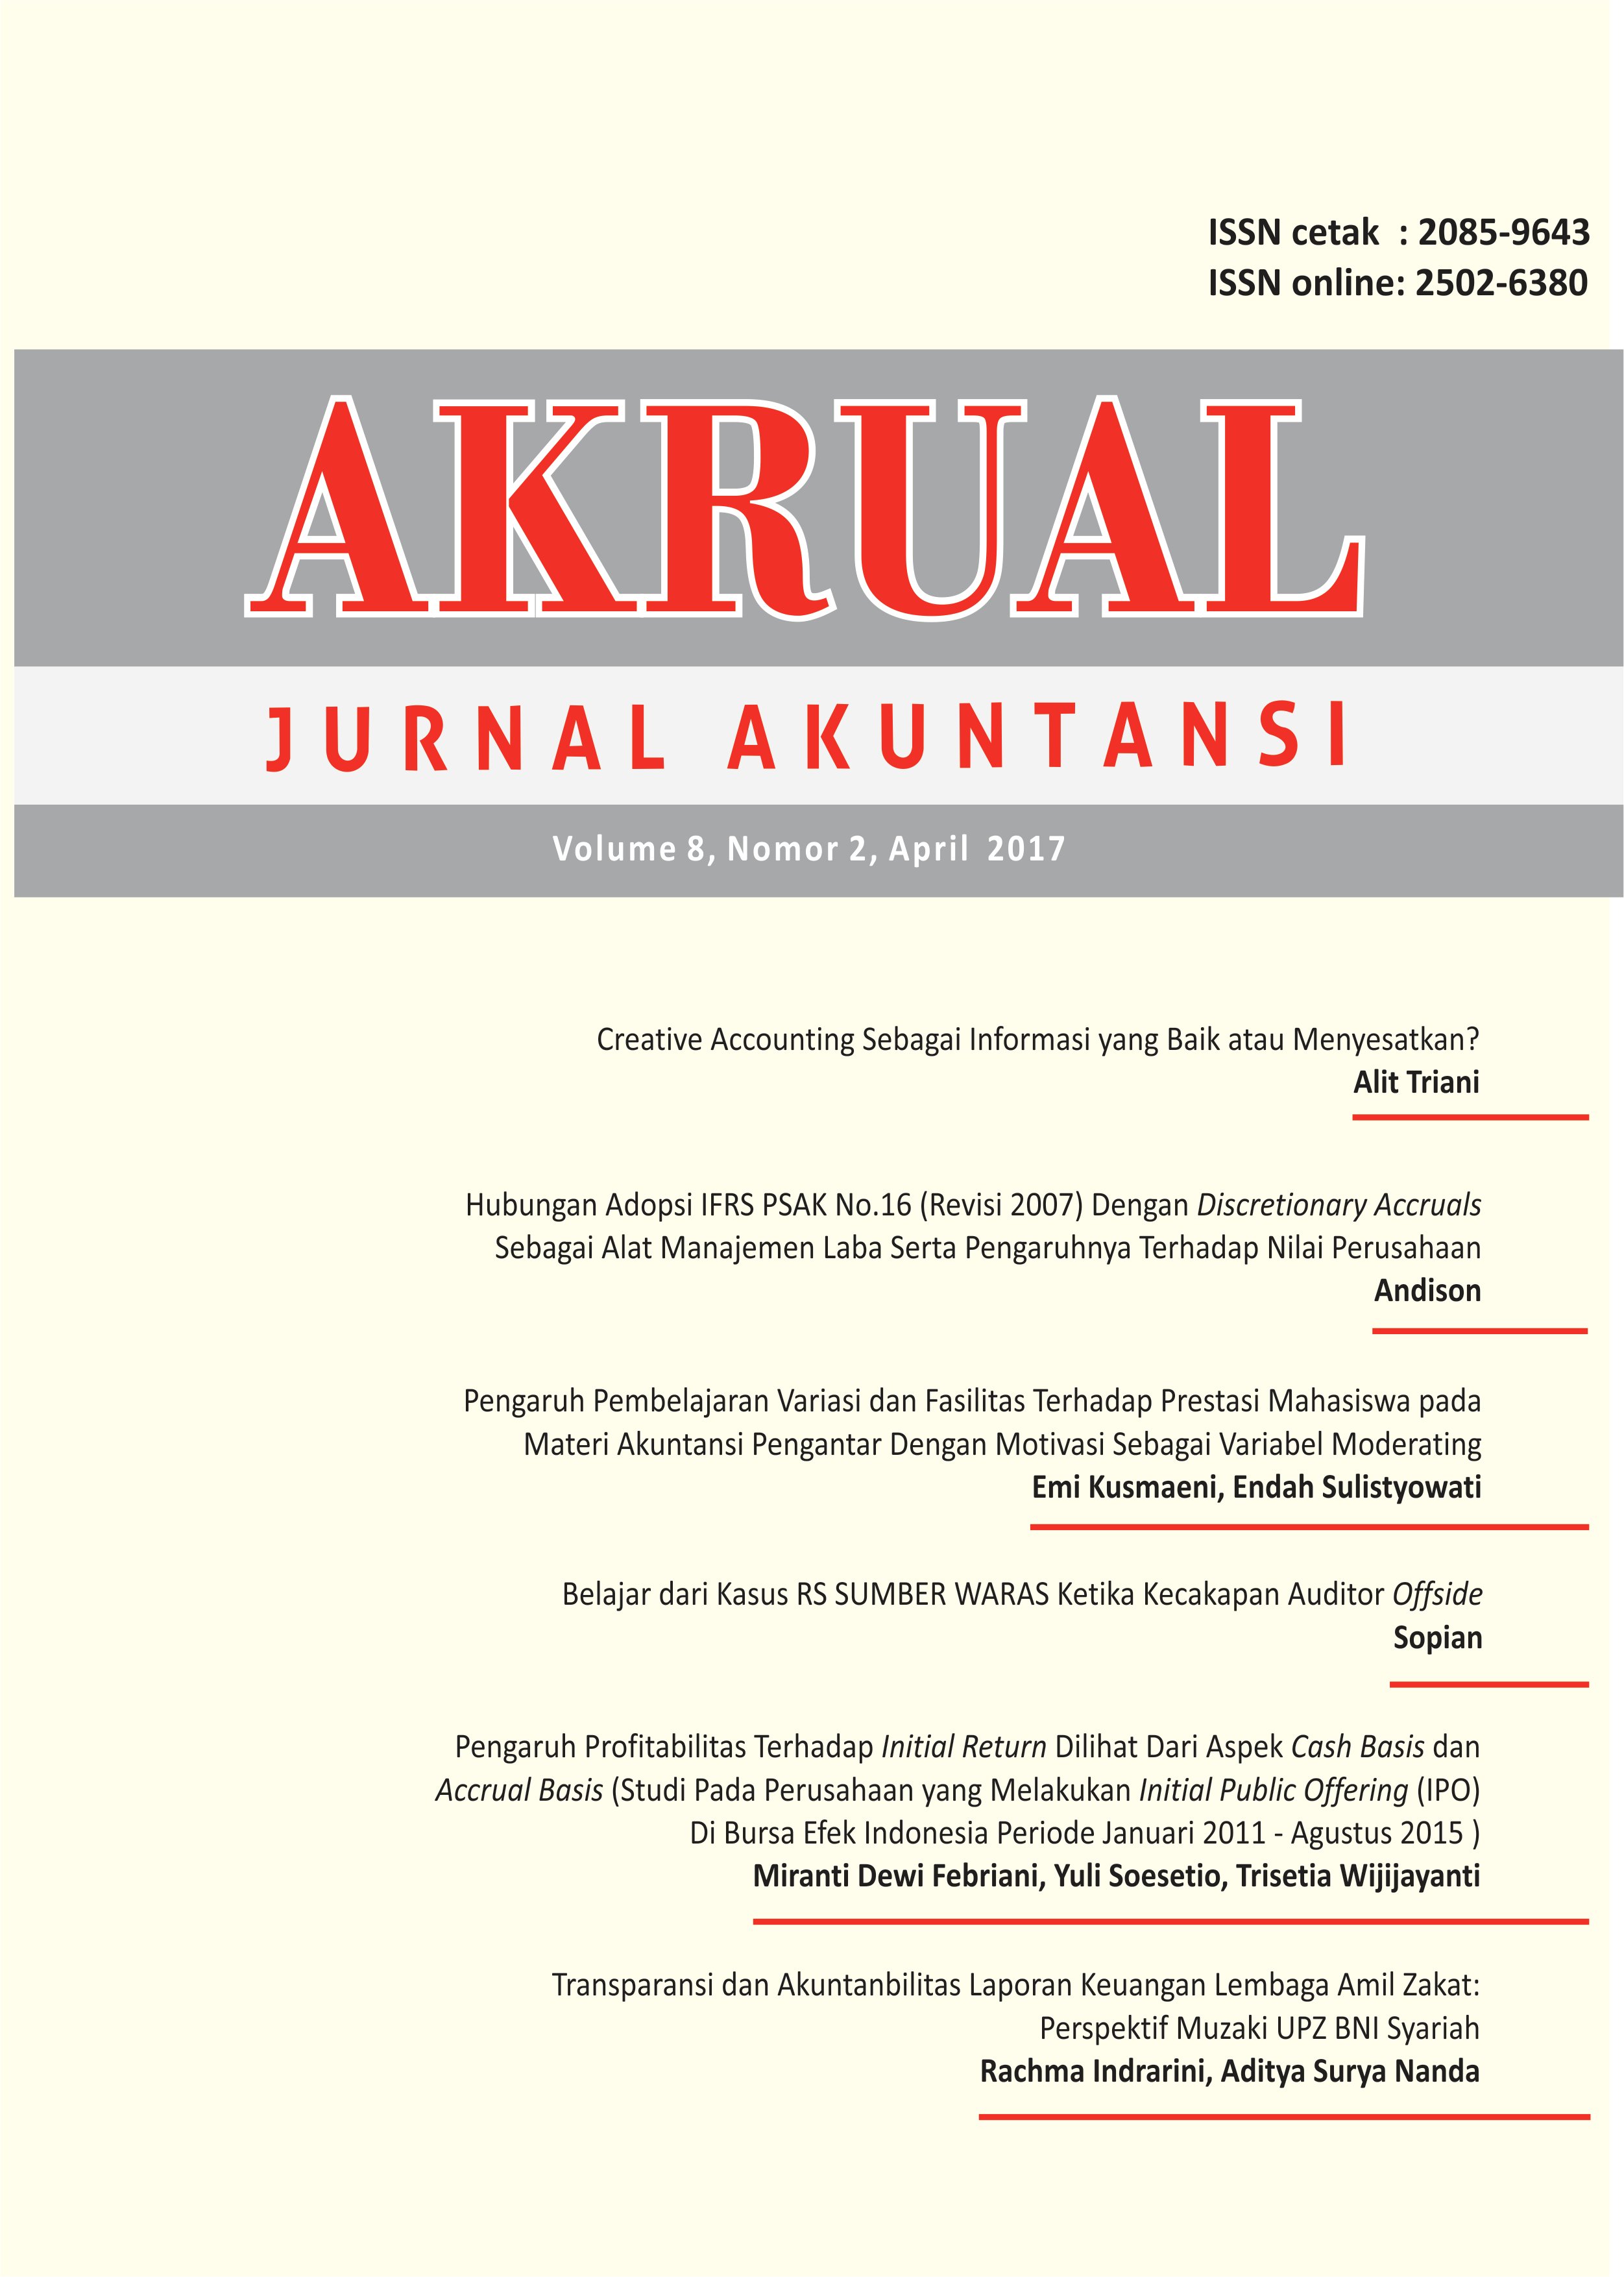 					View Vol. 8 No. 2: AKRUAL: Jurnal Akuntansi (April 2017)
				